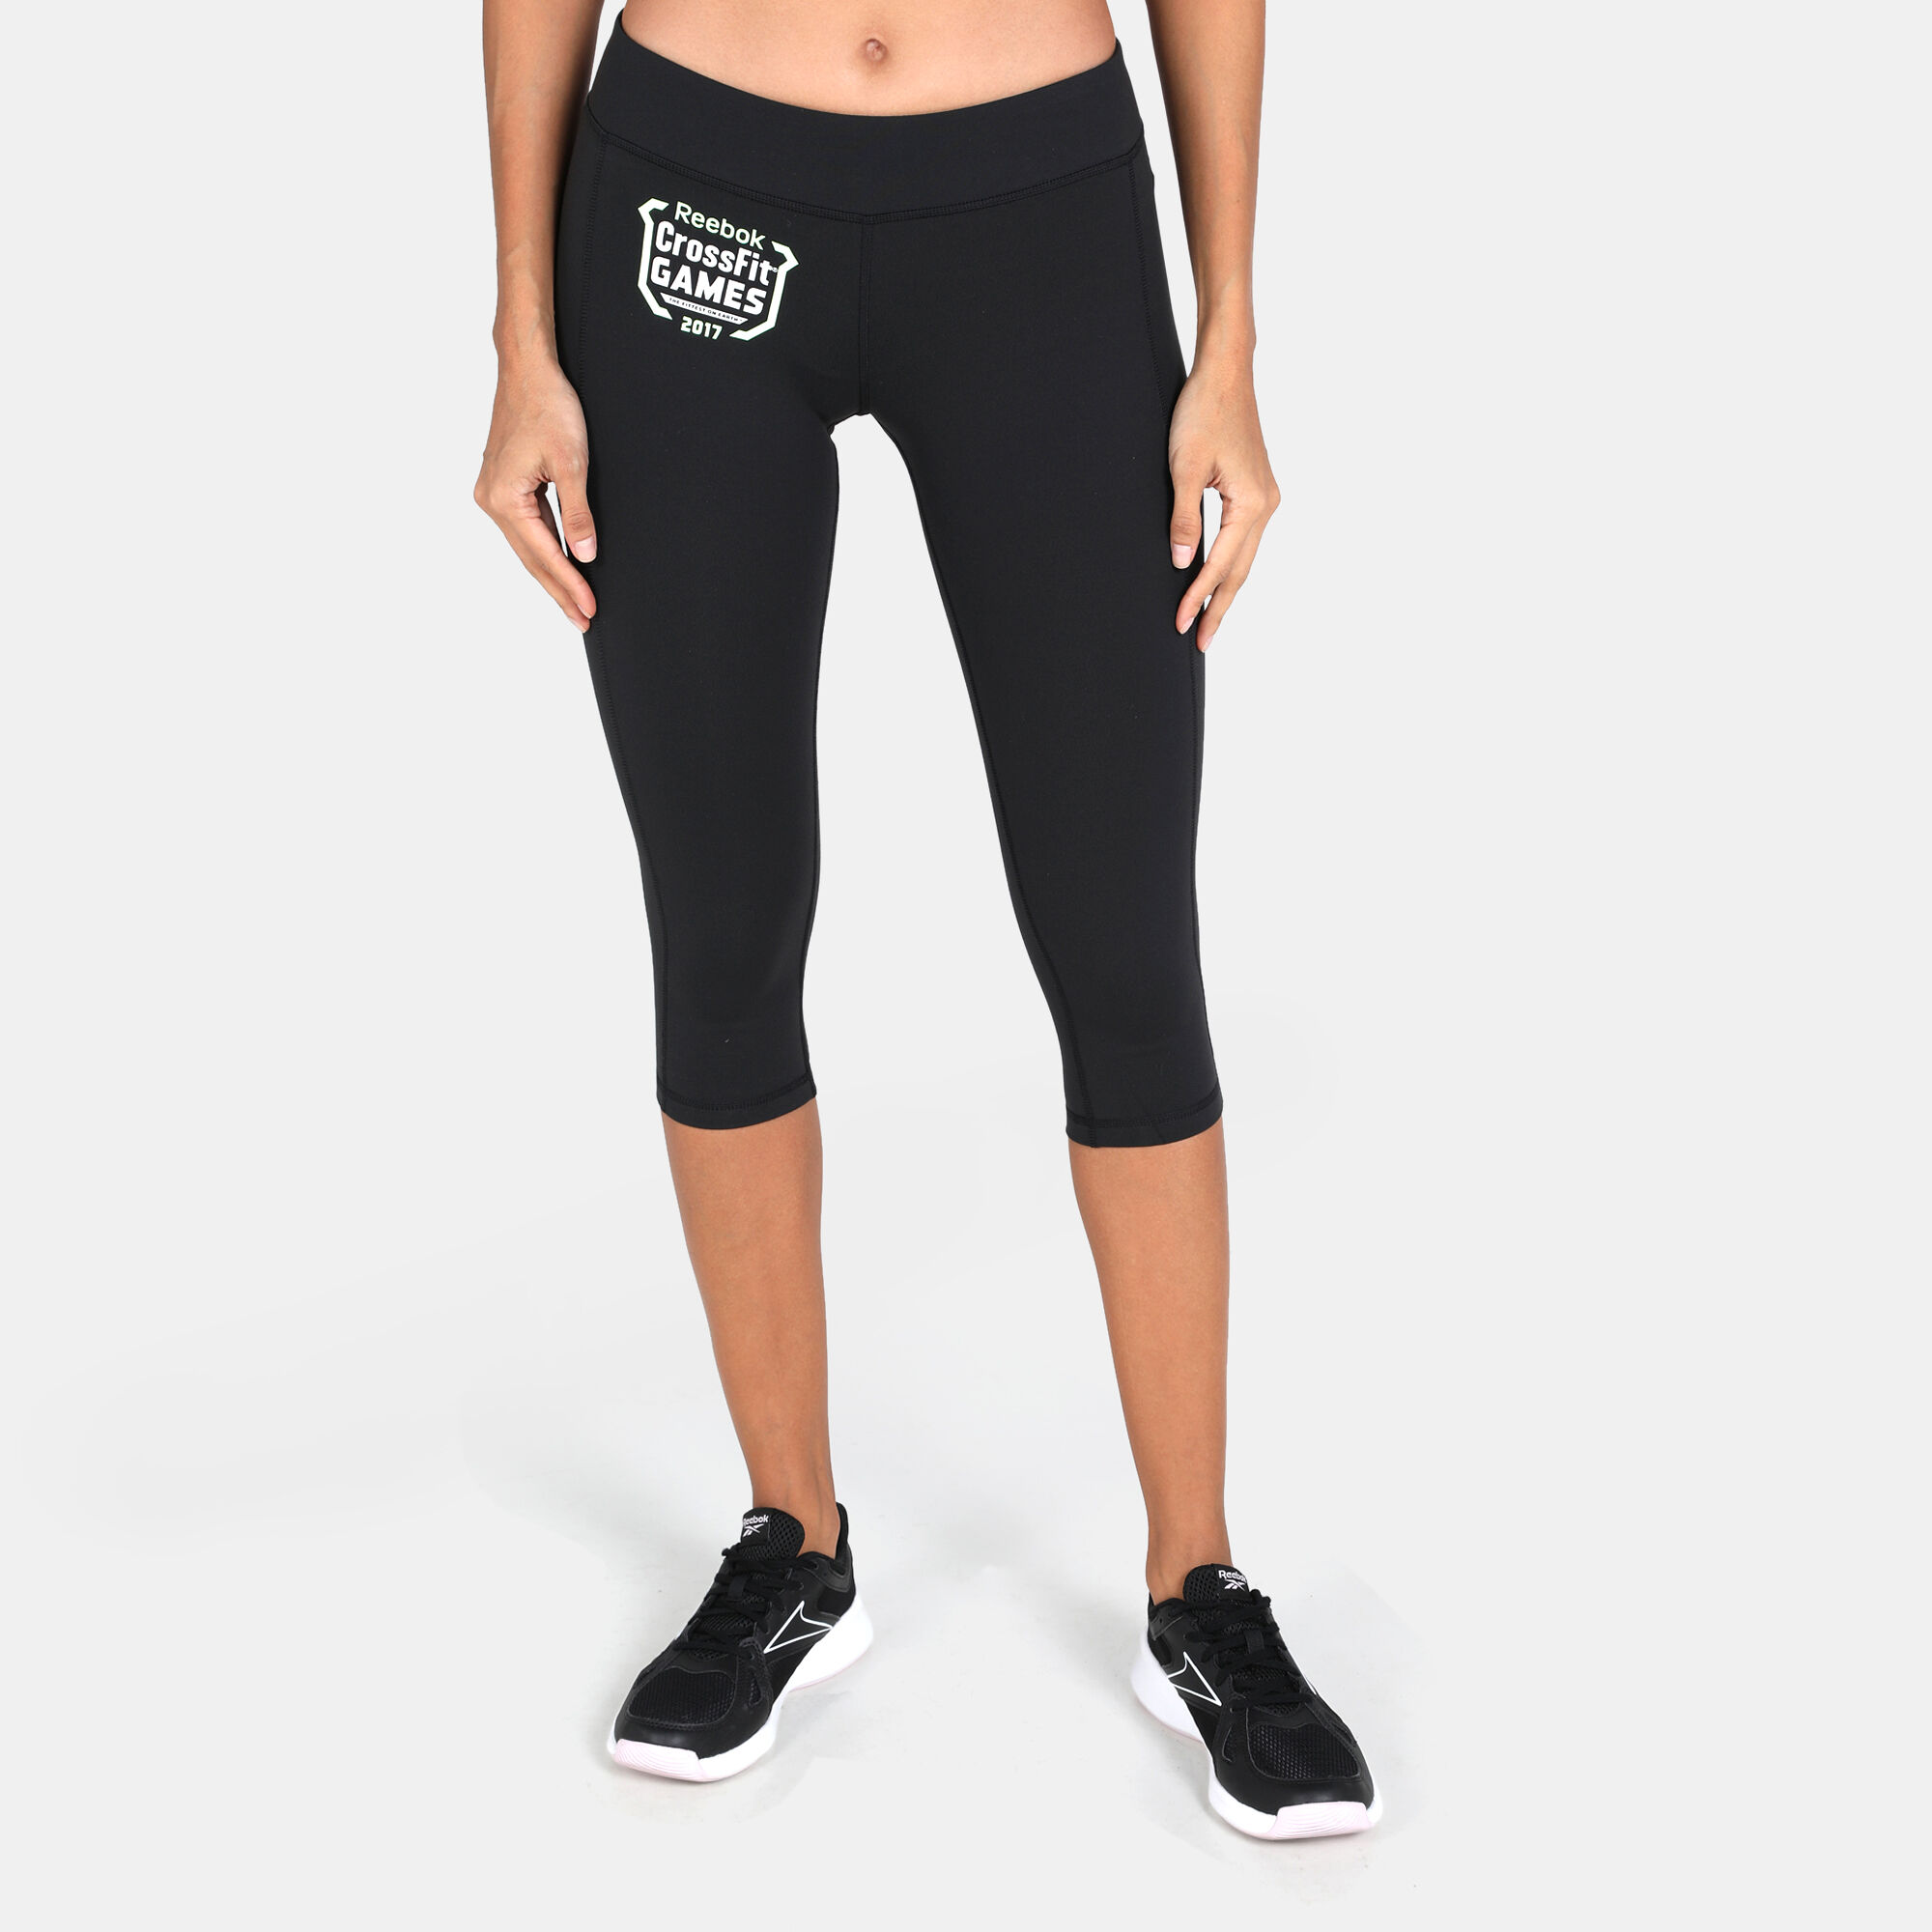 Buy Reebok Women's CrossFit Games Performance 3/4 Leggings Black